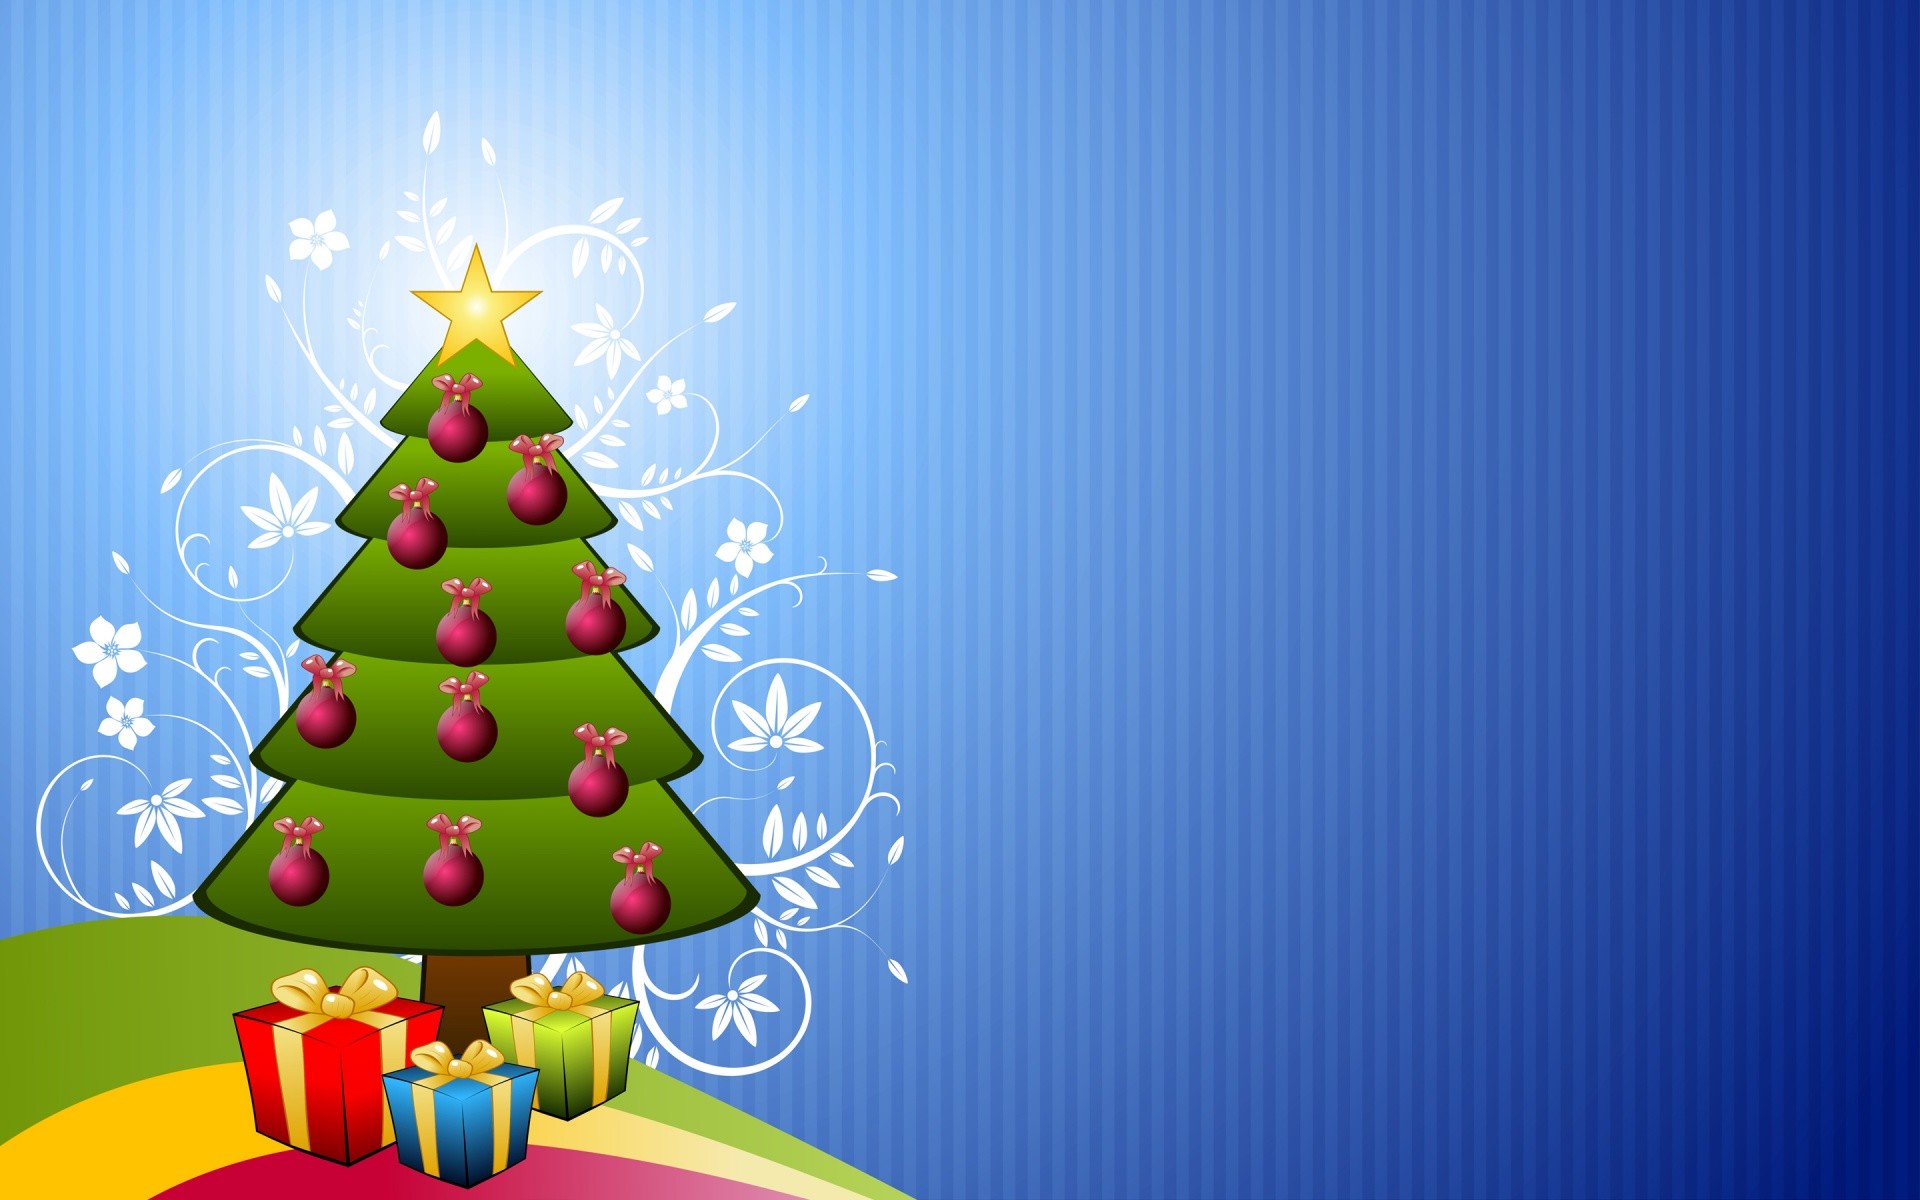 子供のためのクリスマスの壁紙,クリスマスツリー,クリスマスの飾り,クリスマス,クリスマスオーナメント,クリスマス・イブ